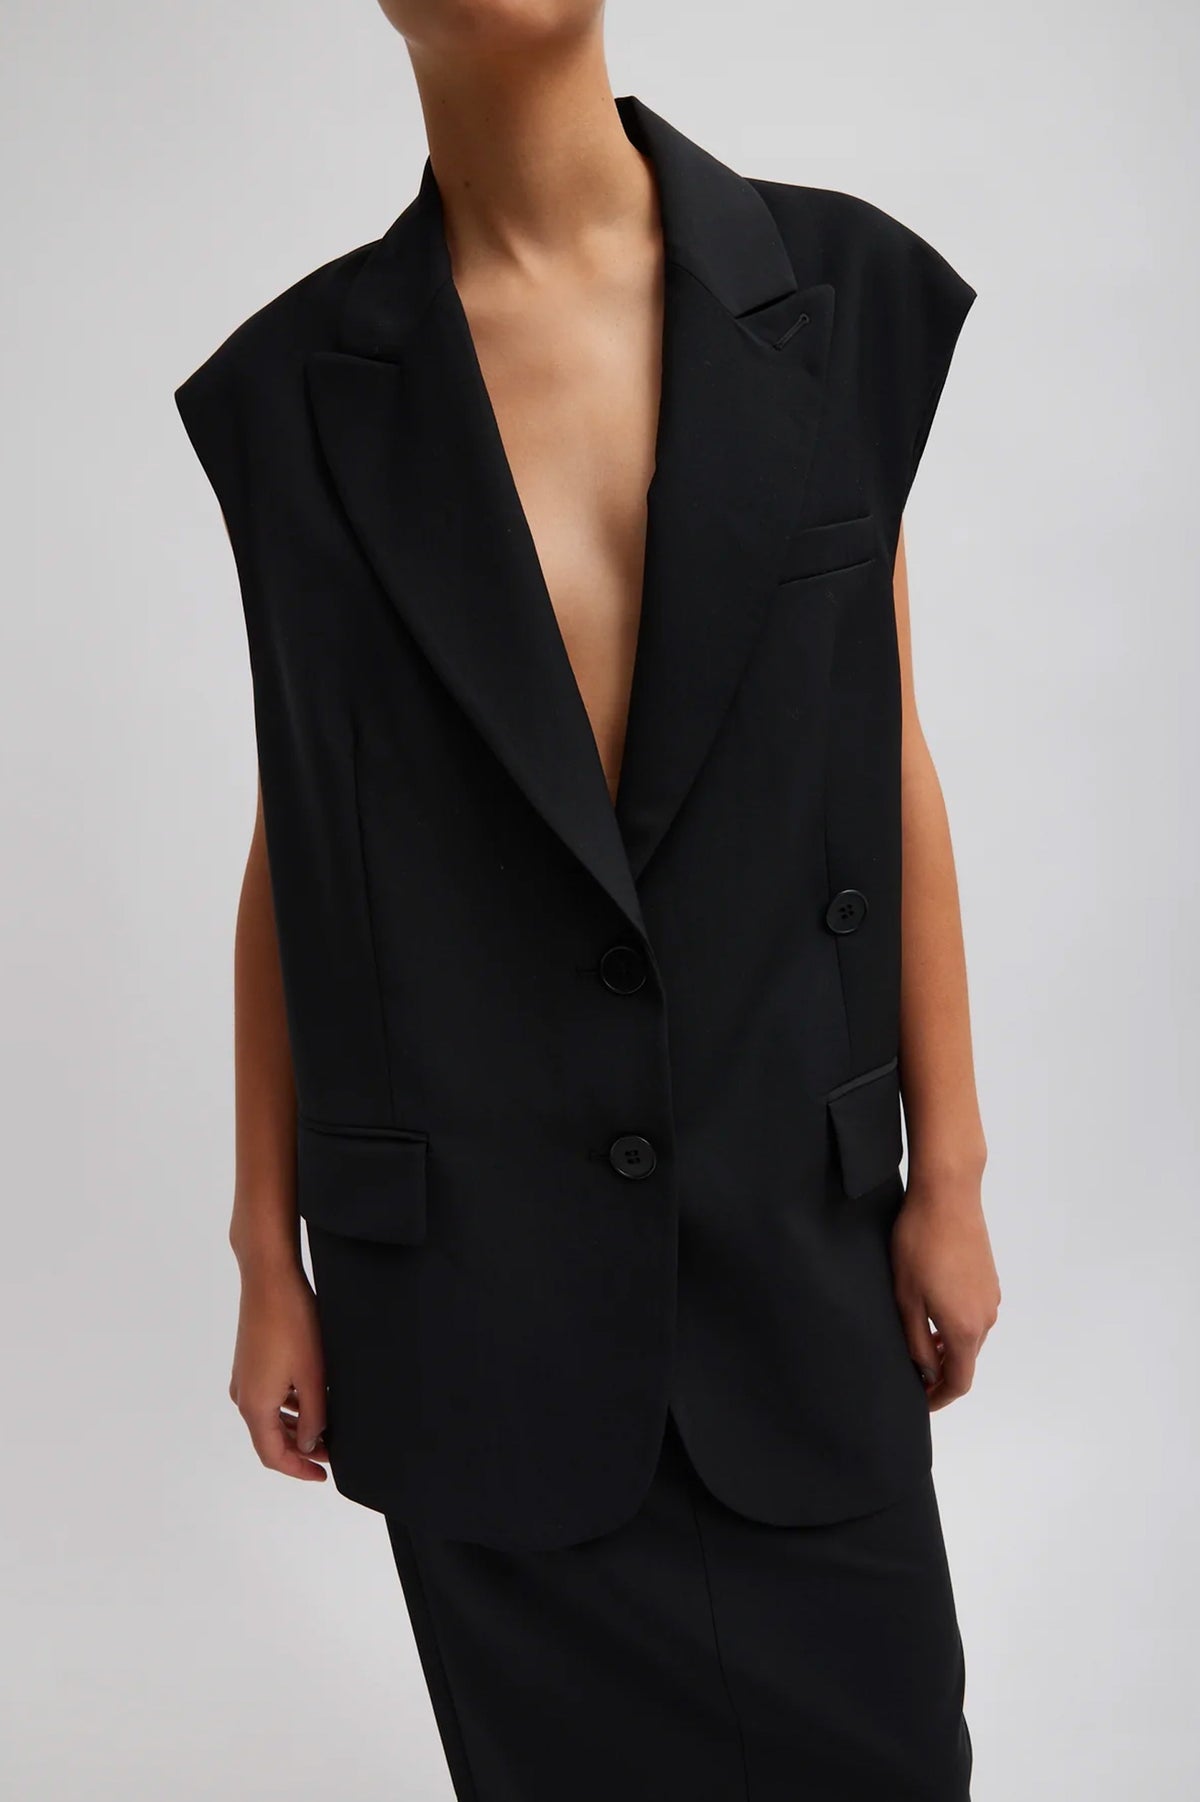 Tropical Wool Liam Vest in Black